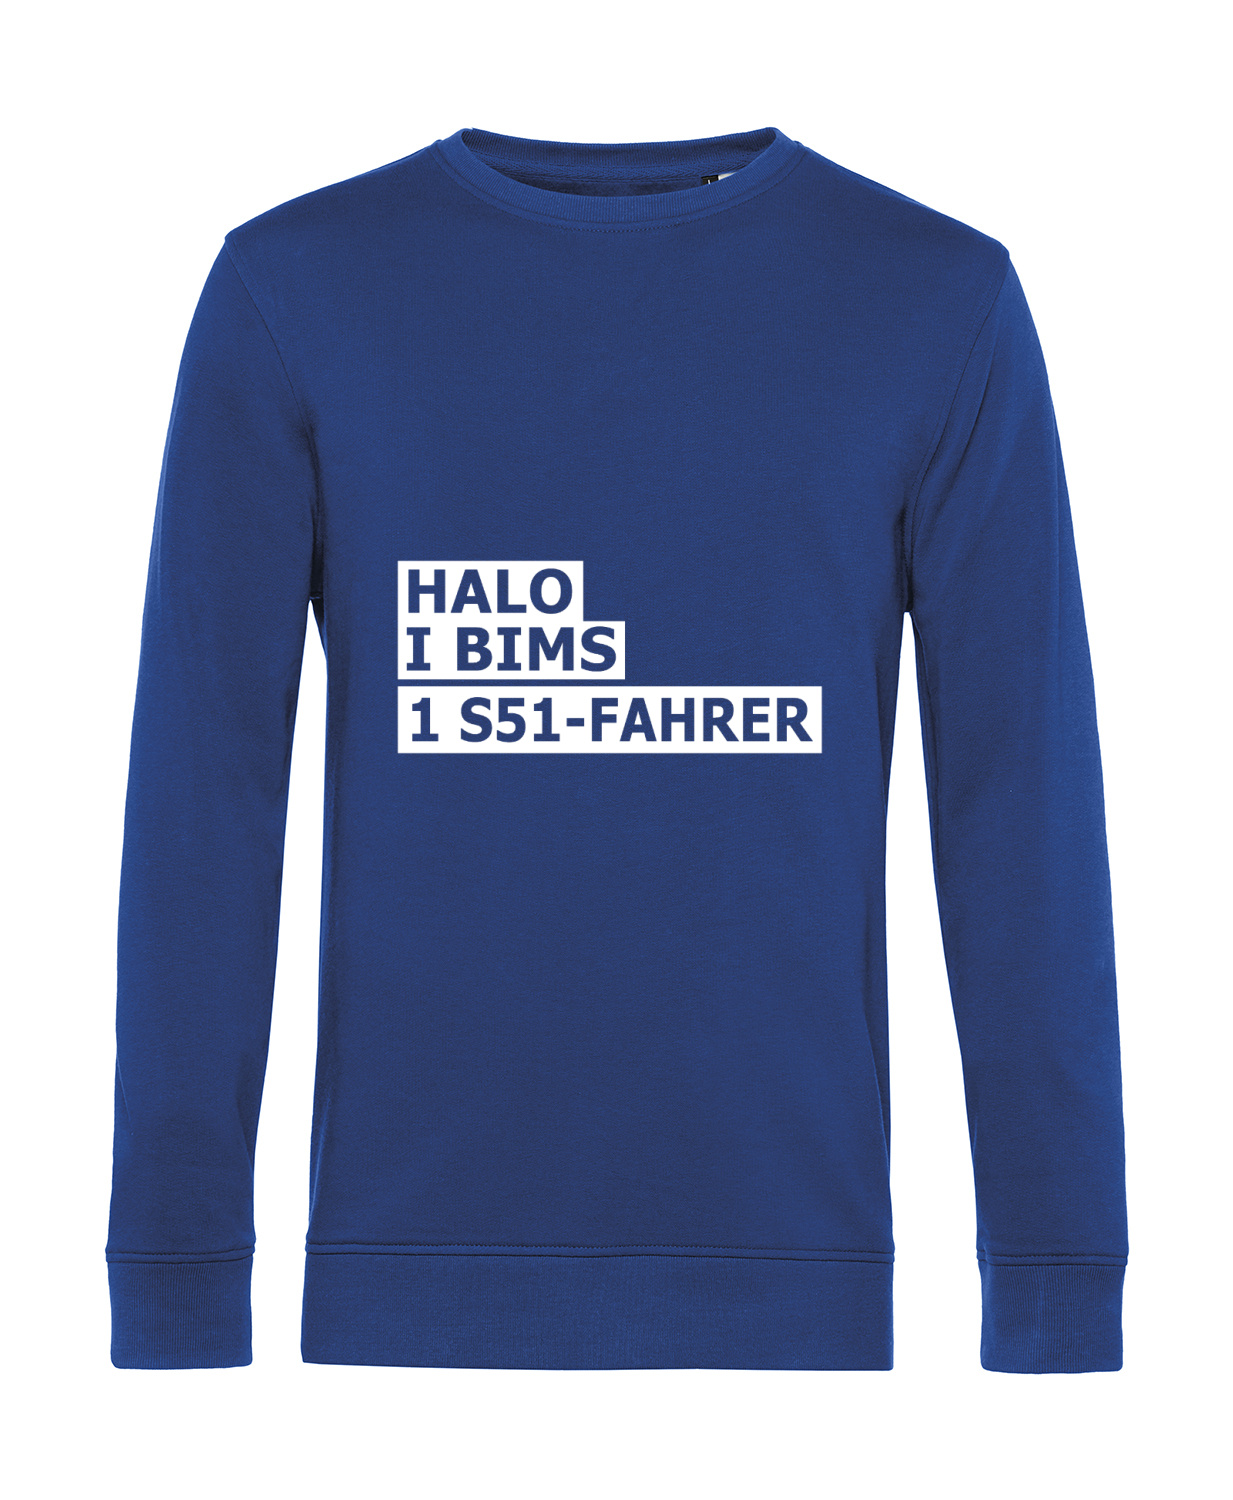 Nachhaltiges Sweatshirt Herren 2Takter - Halo I bims 1 S51-Fahrer